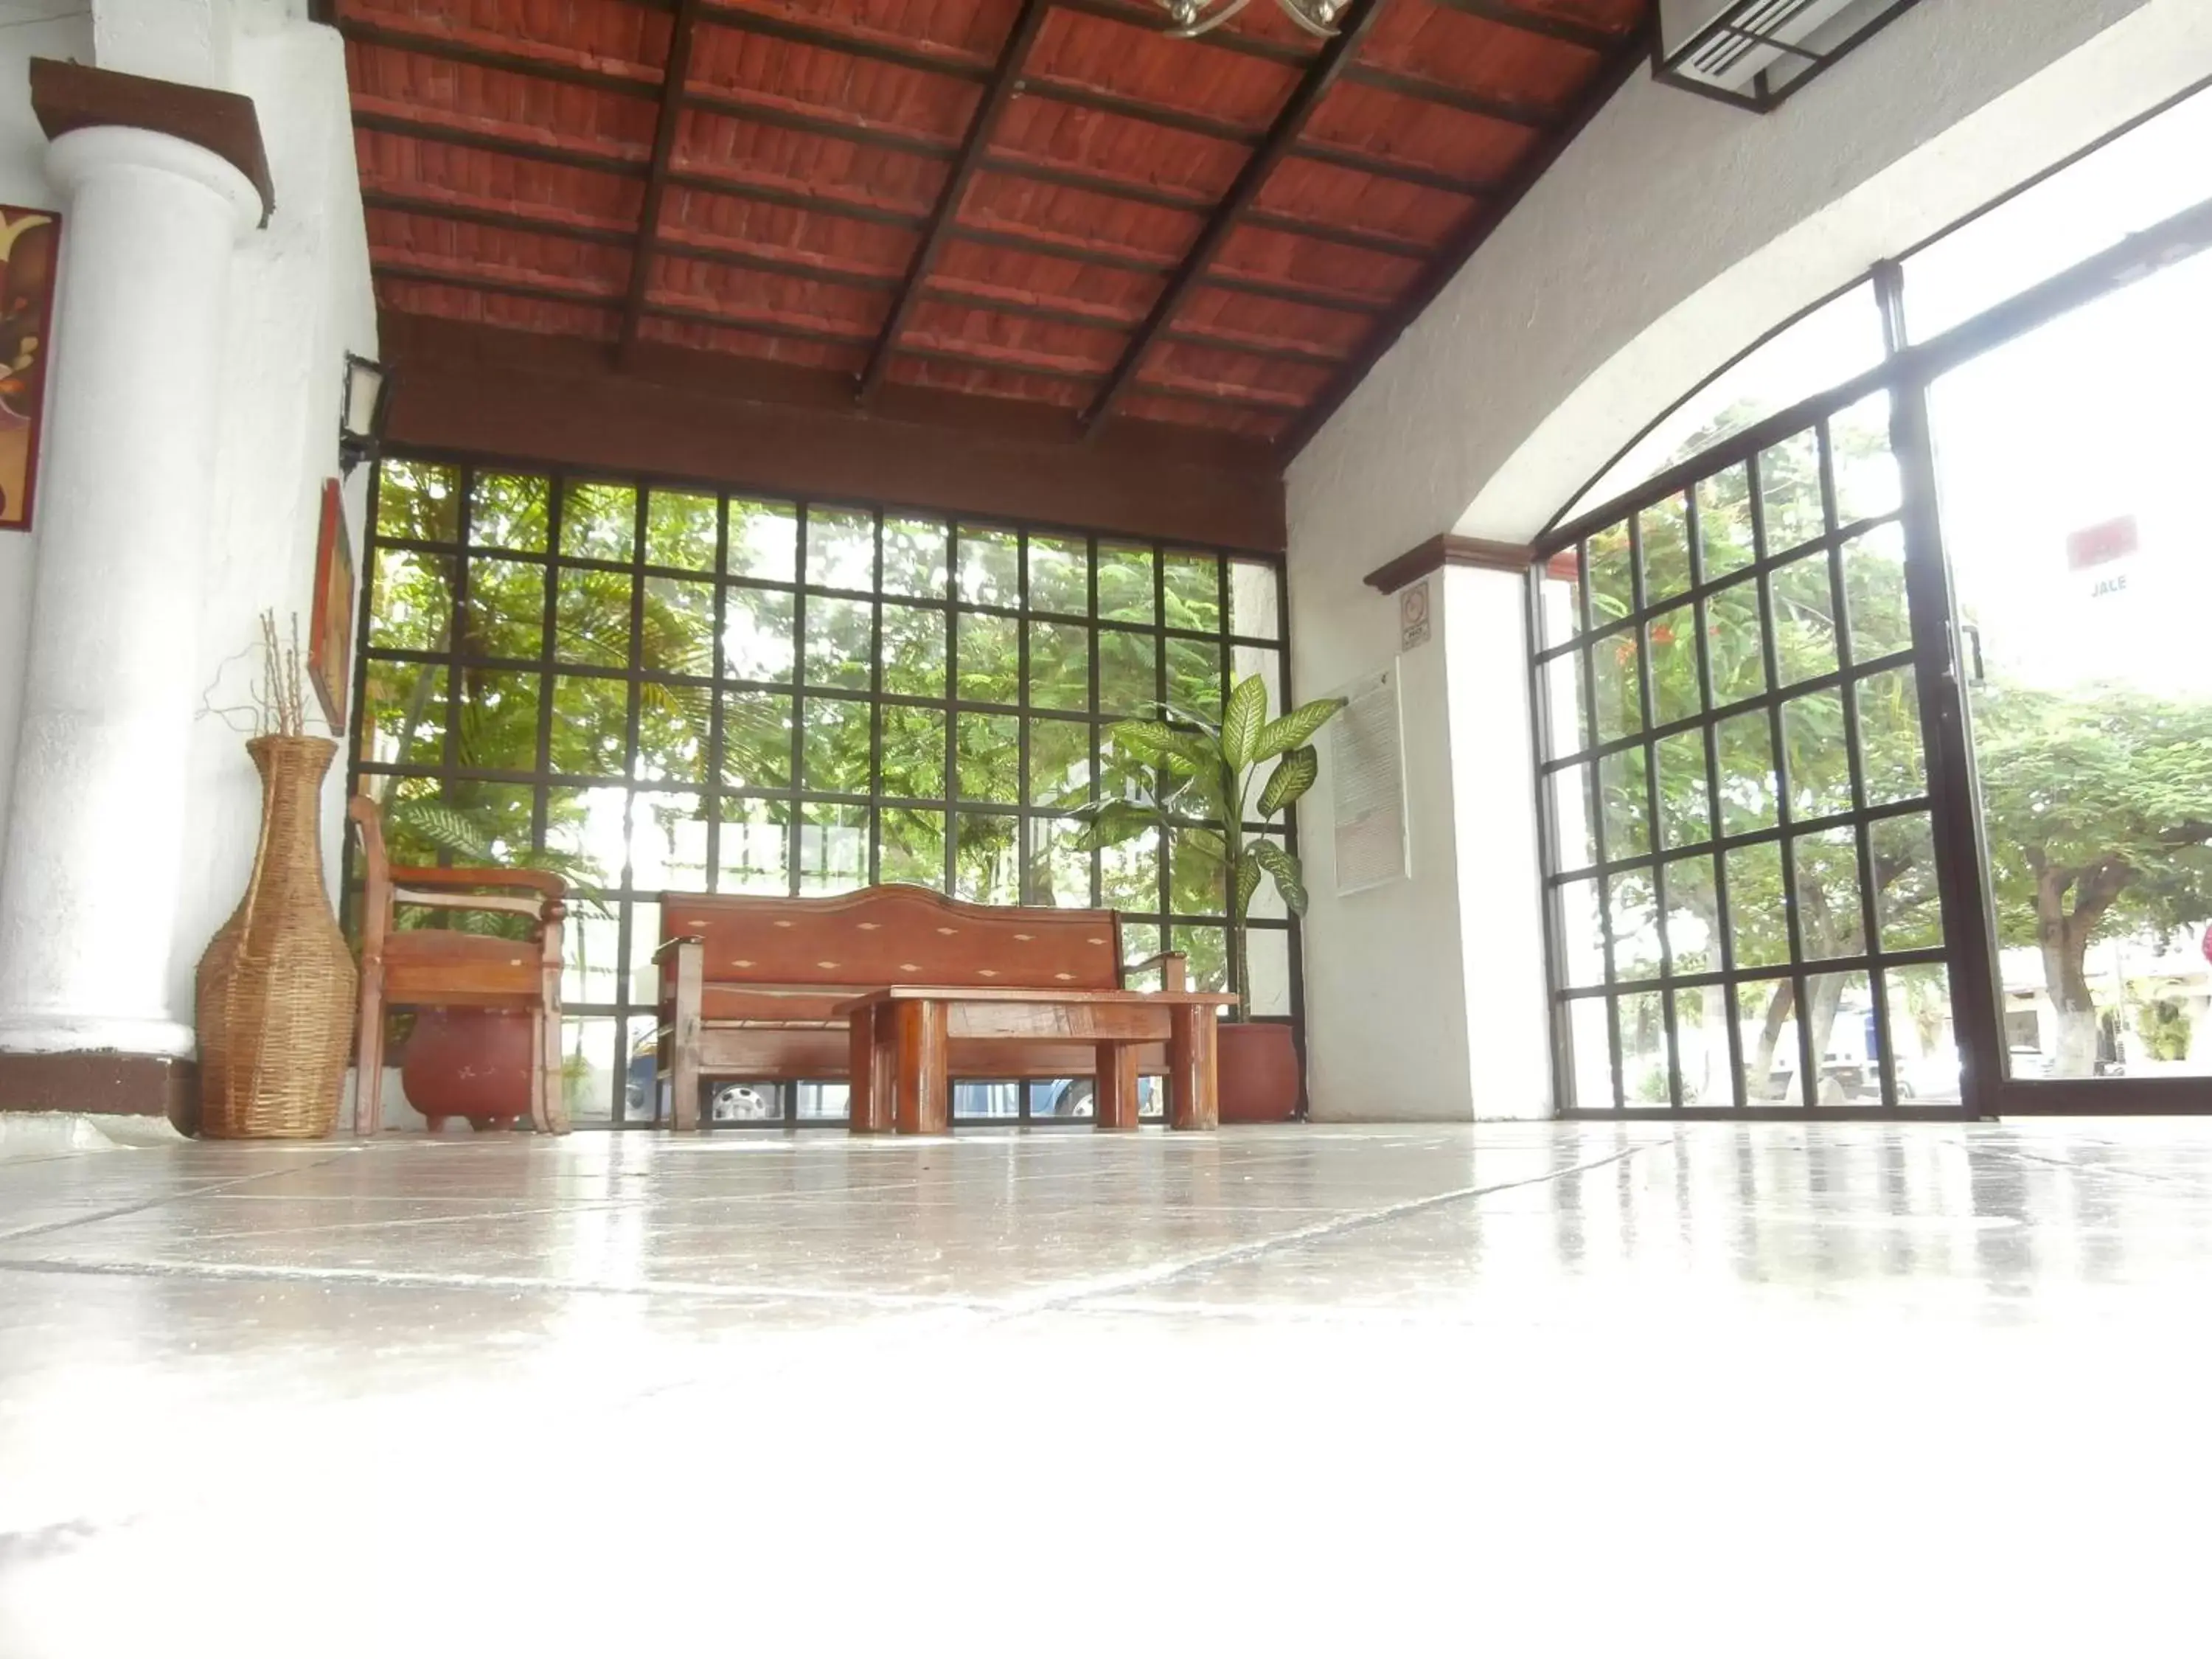 Lobby or reception in Hotel Hacienda Cancun